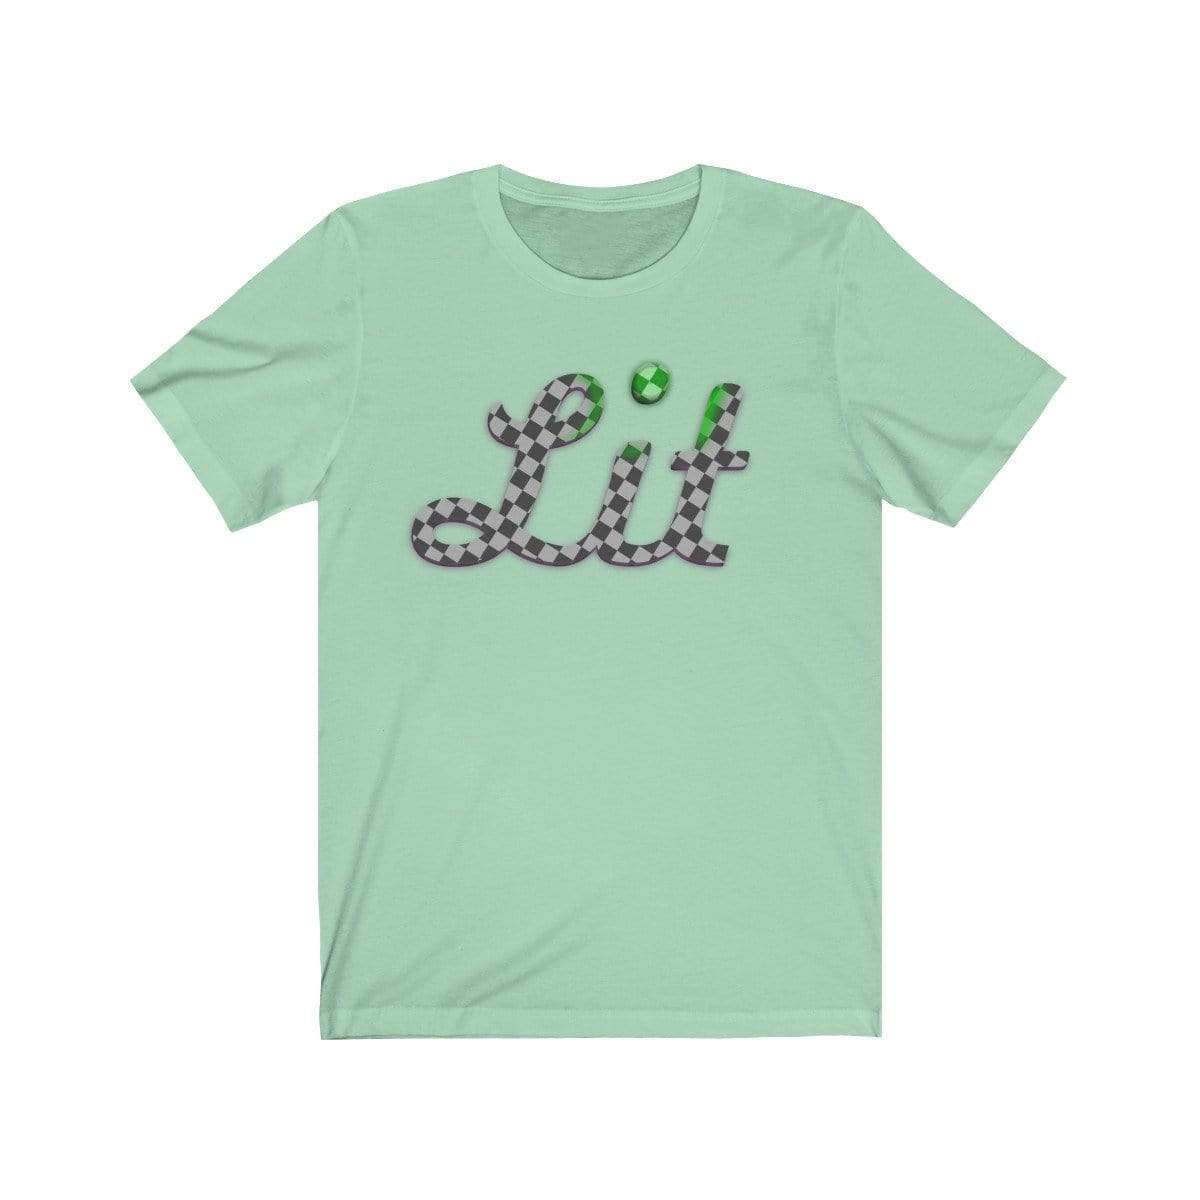 Plumskum T-Shirt Mint / S Grey Checkered Lit T-shirt